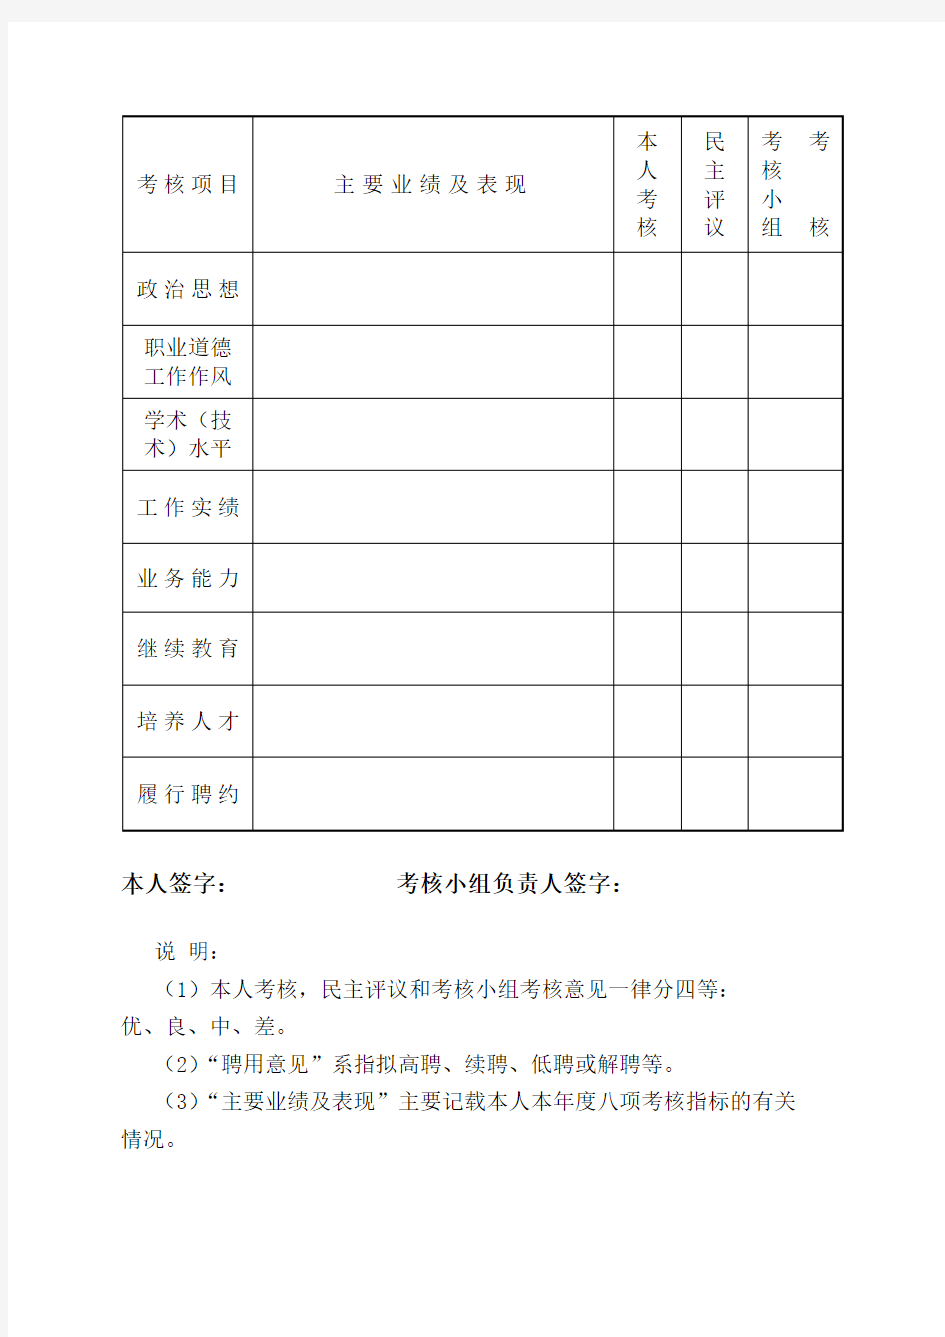 江苏省专业技术人员年度考核表(标准版)